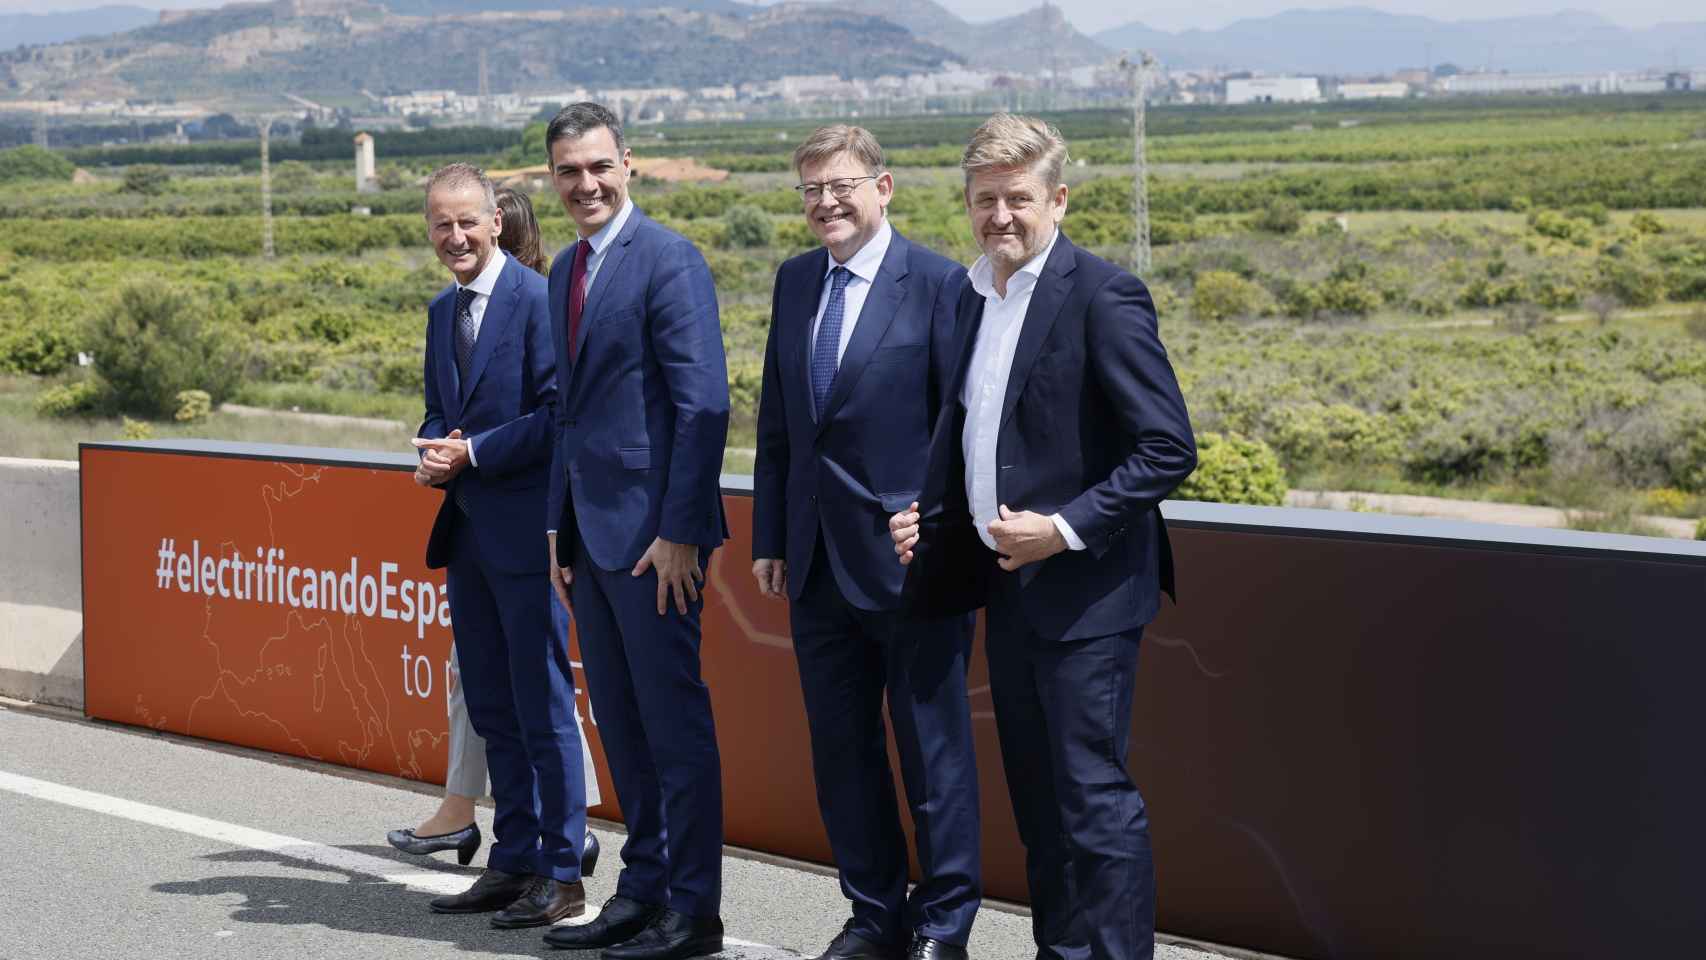 Herbert Diess, Pedro Sánchez, Ximo Puig y Wayne Griffiths, junto a los terrenos de la futura Volkswagen.